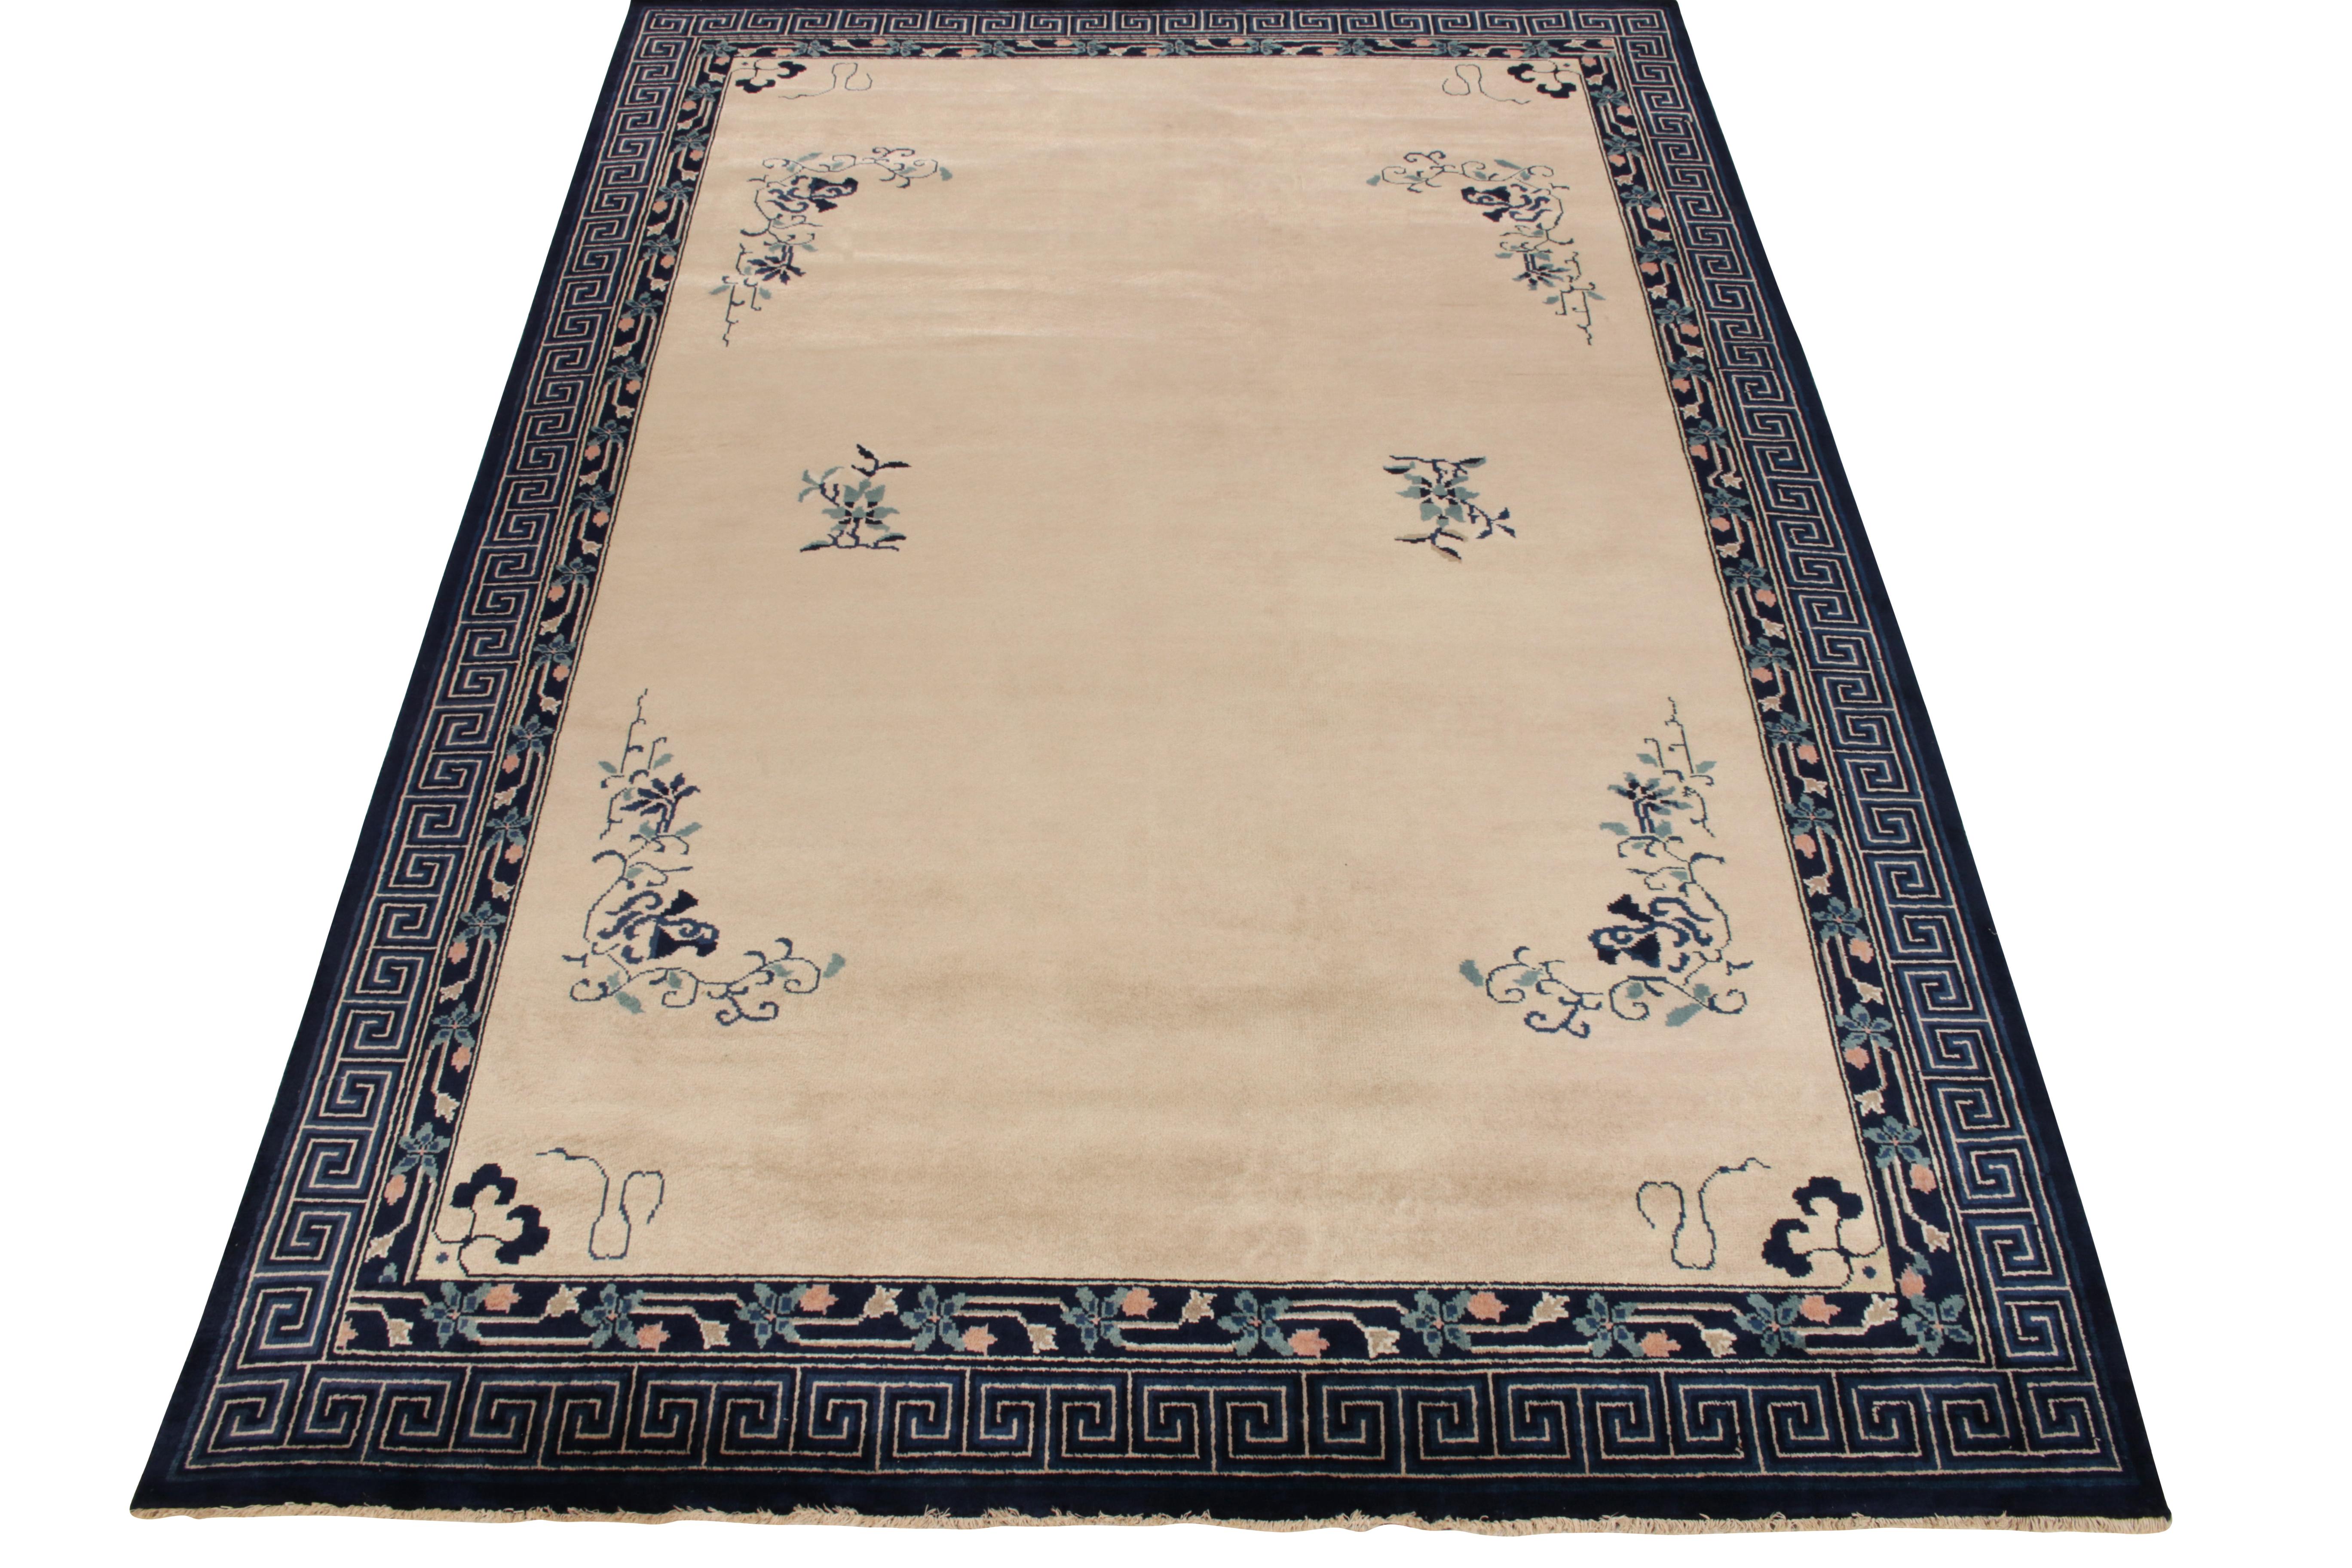 Dieser Teppich im Stil der 1920er Jahre ist mit einer Bordüre im griechischen Stil und floralen Mustern in Dunkelblau, Beige und Pfirsich eingefasst. Er ist von der chinesischen Art Deco inspiriert und weist eine unverwechselbare Vintage-Linie auf,